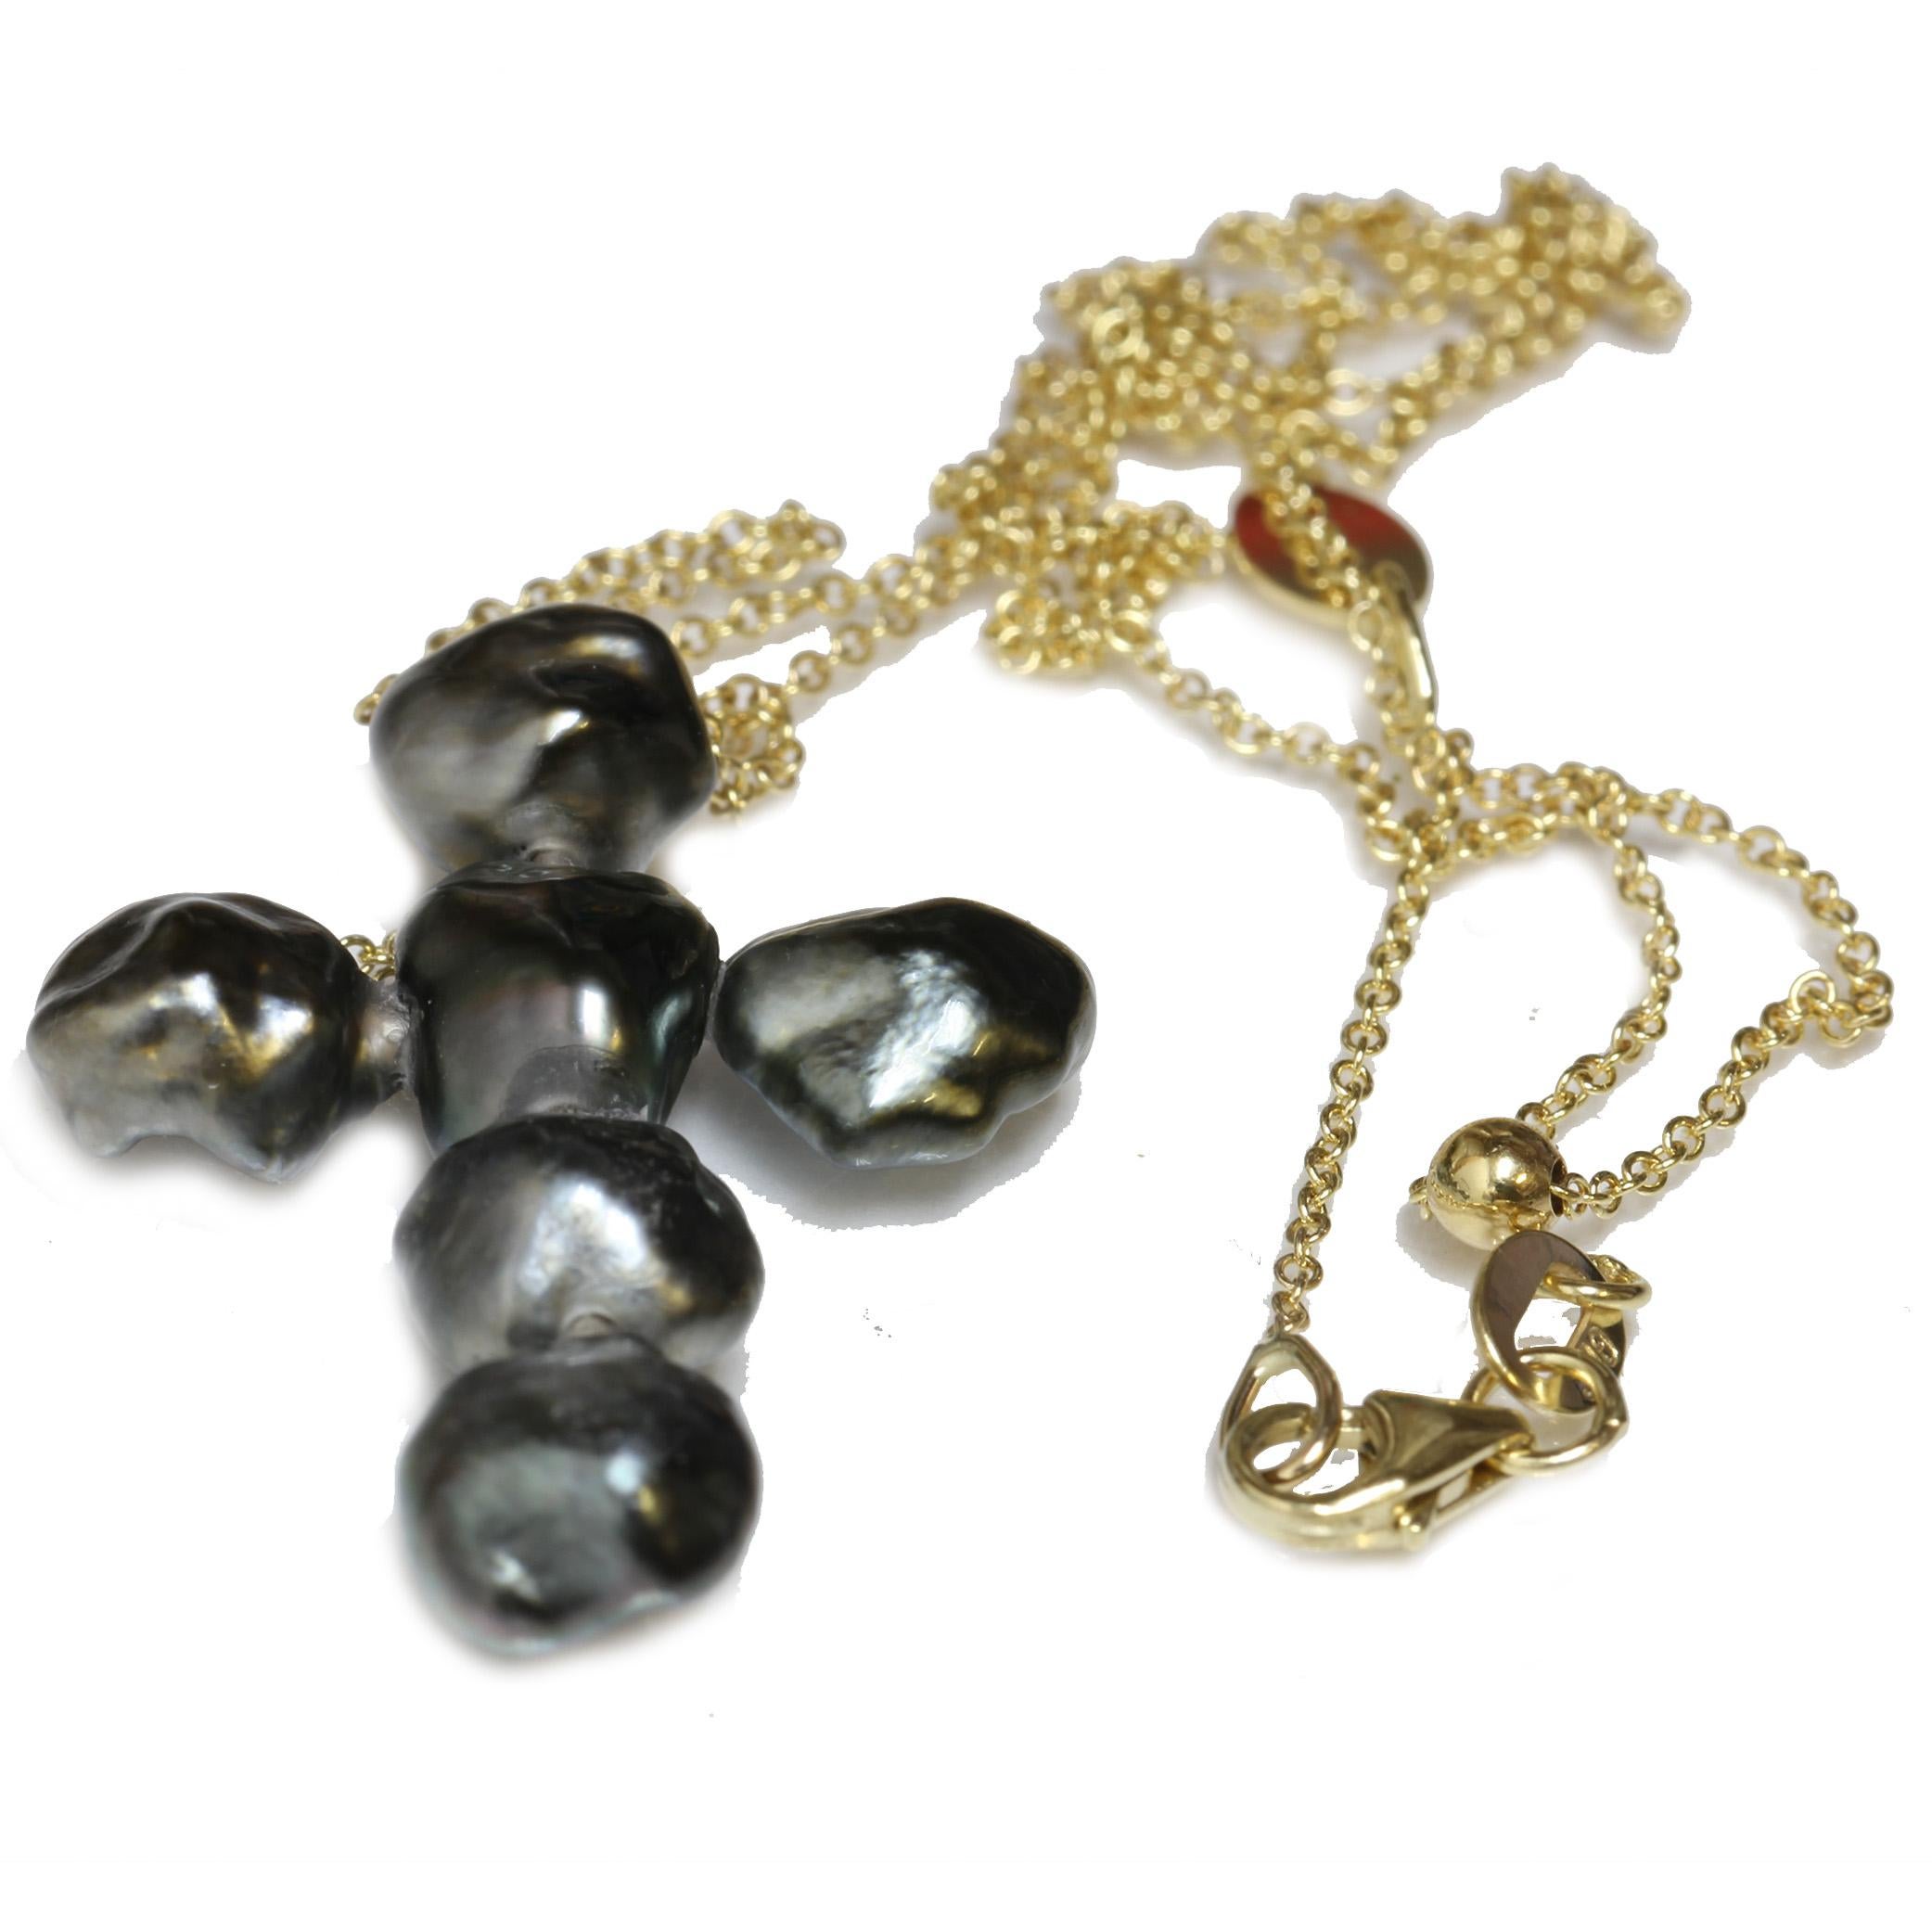 7.0 - 8.0mm  Collier de perles de Tahiti en or jaune 14kt avec diamant en forme de croix et chaîne ajustable rolo italienne. Les perles sont d'une couleur noire étonnante et d'une forme baroque unique. La chaîne peut être facilement ajustée en